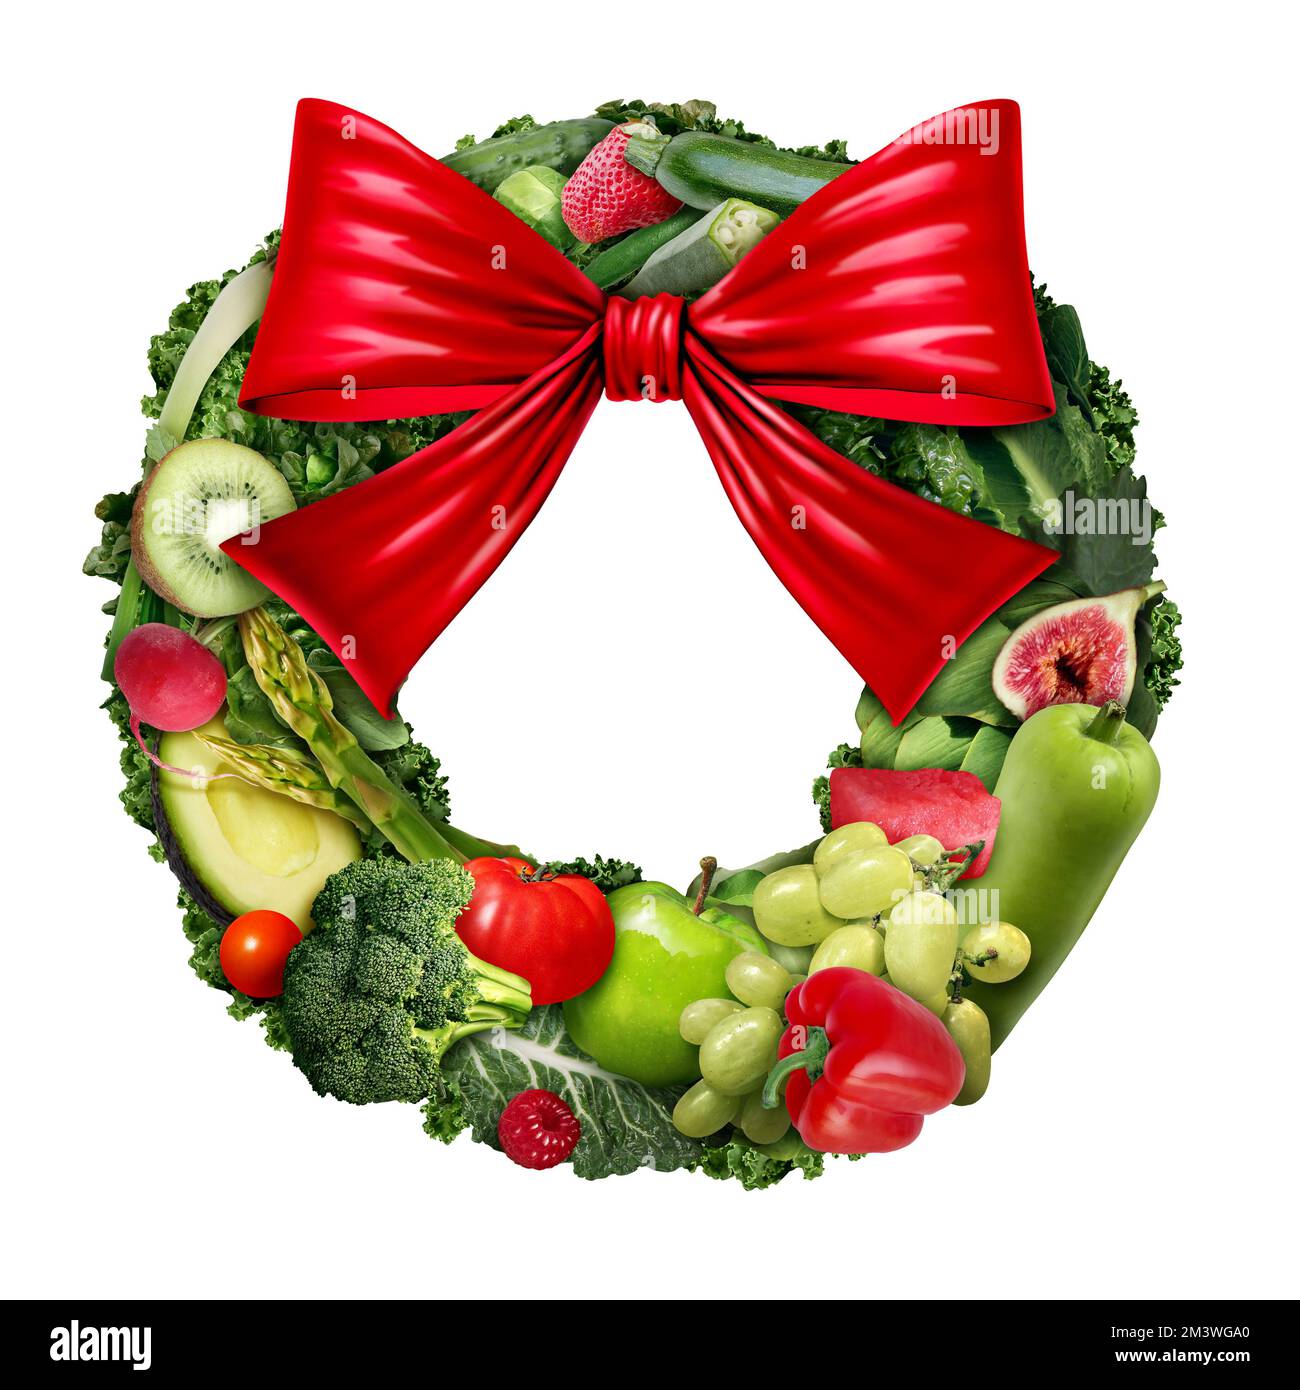 Gesundes Weihnachtsessen Symbol und gesundheitliche Vorteile des Verzehrs von Obst und Gemüse als lustiger festlicher Weihnachtskranz mit roter Schleife Stockfoto